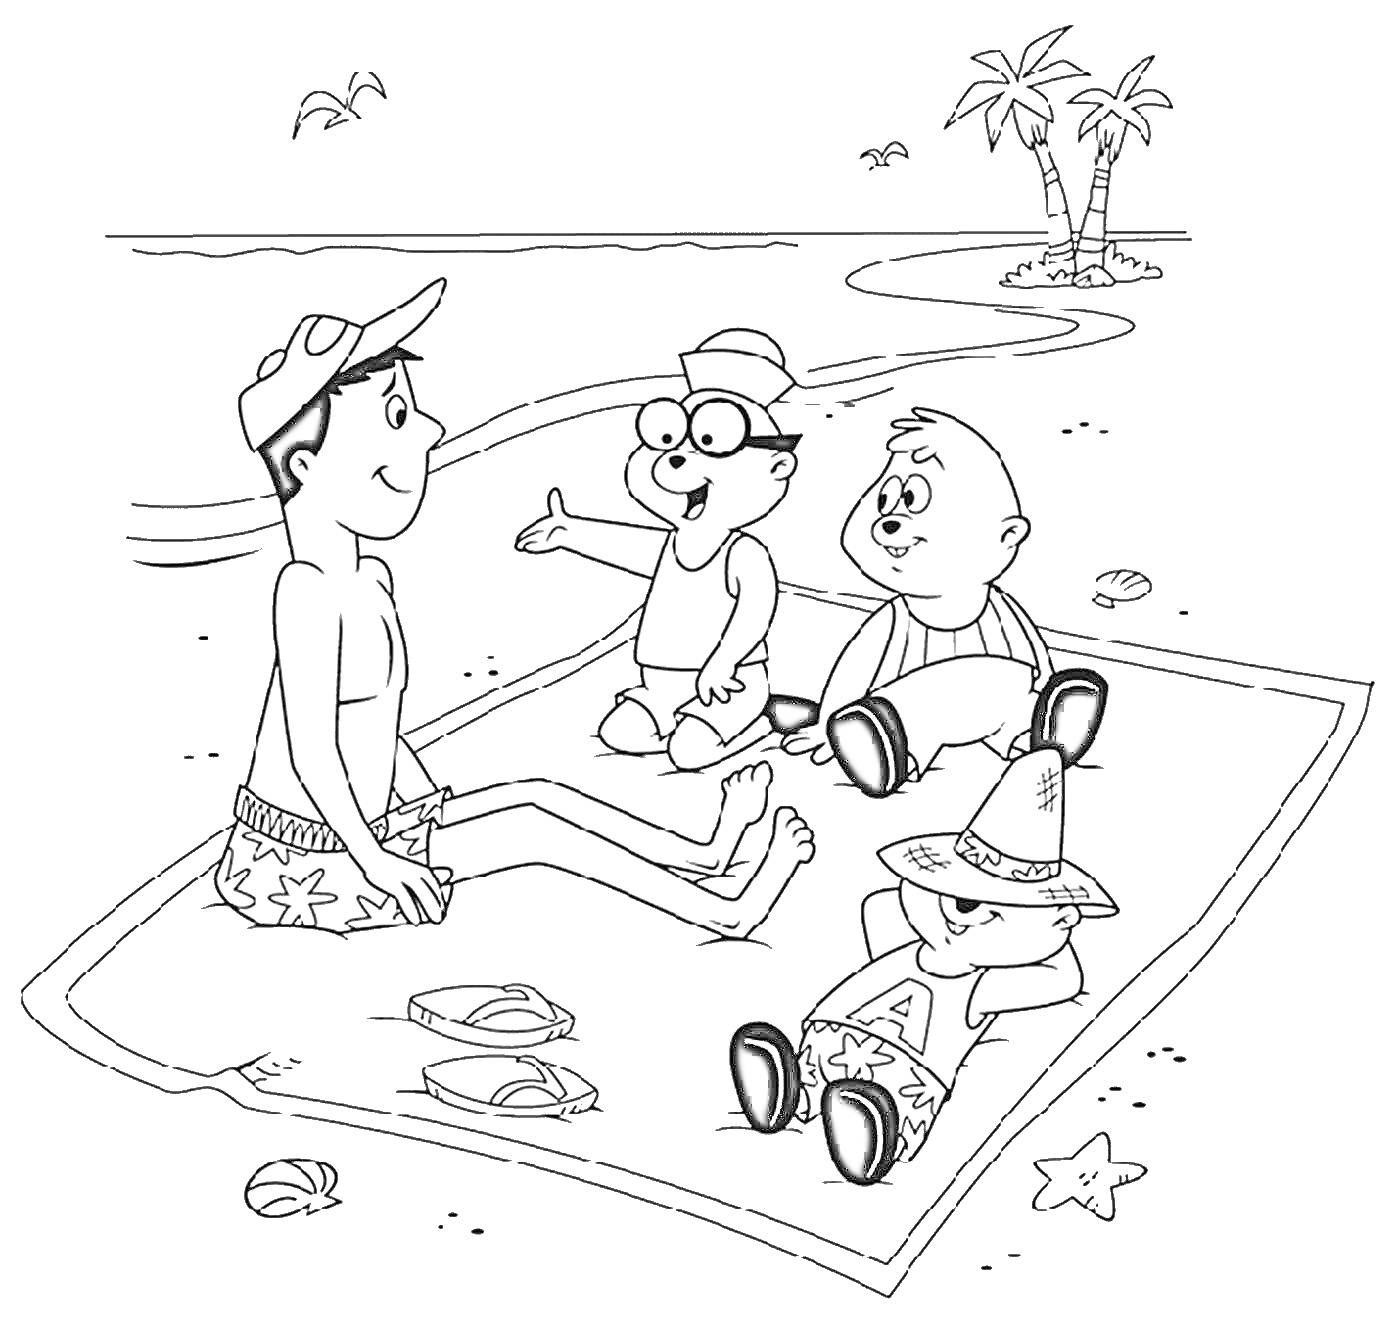 Раскраска Люди на пляже: четверо отдыхающих на покрывале, пара сланцев, морская звезда, пальмы и волны на заднем плане